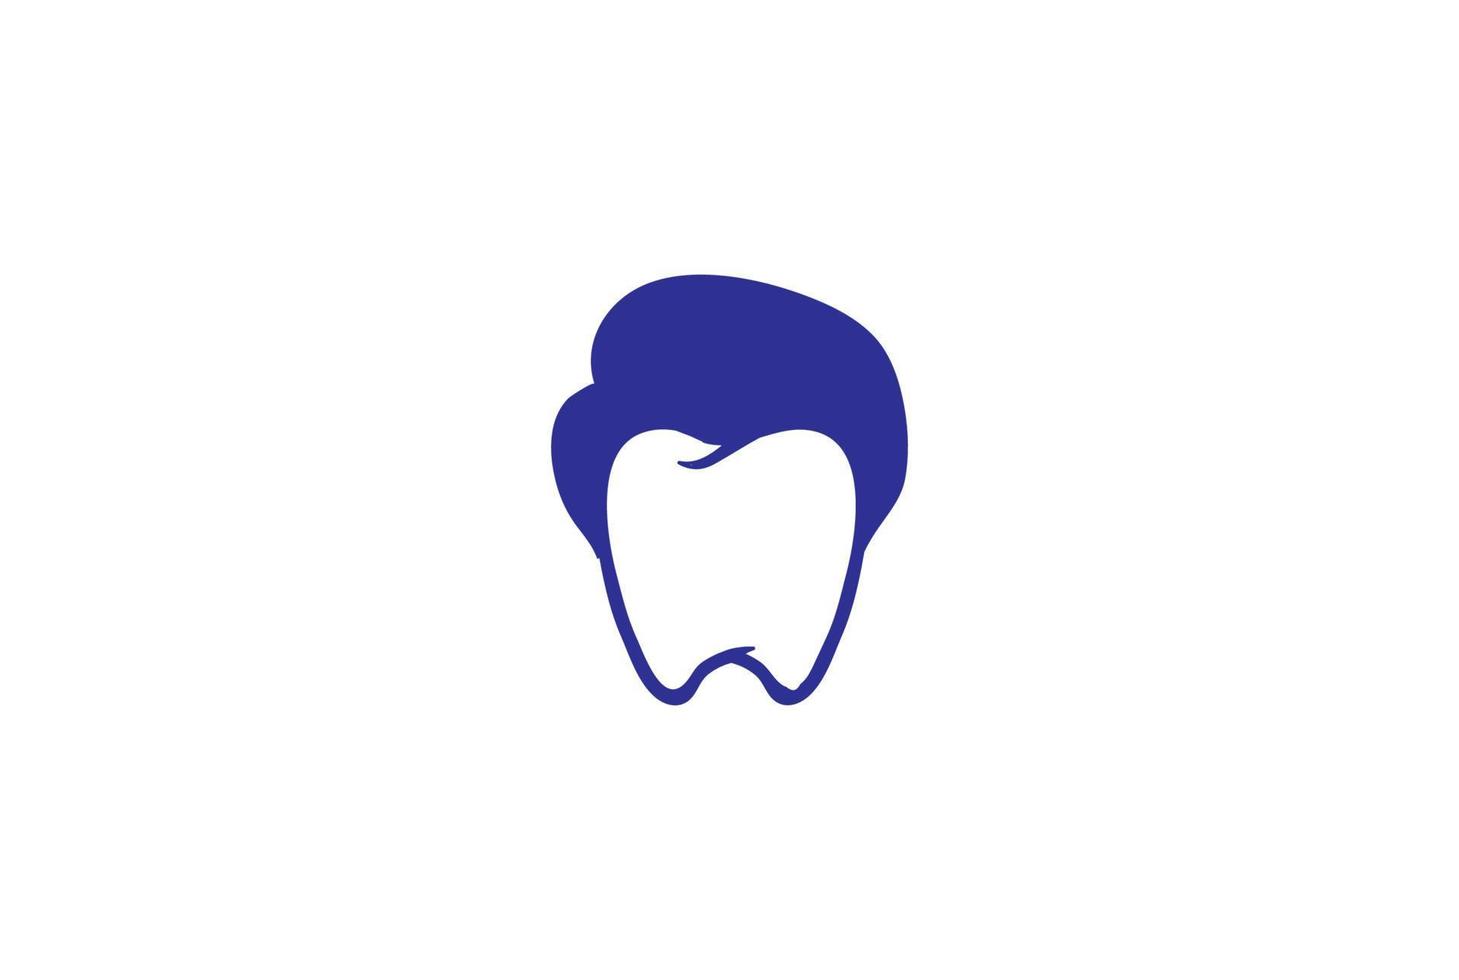 Mann männlich mit Dellenzahngesicht für zahnärztliche Zahnmedizin Arzt Klinik Logo Design Vektor